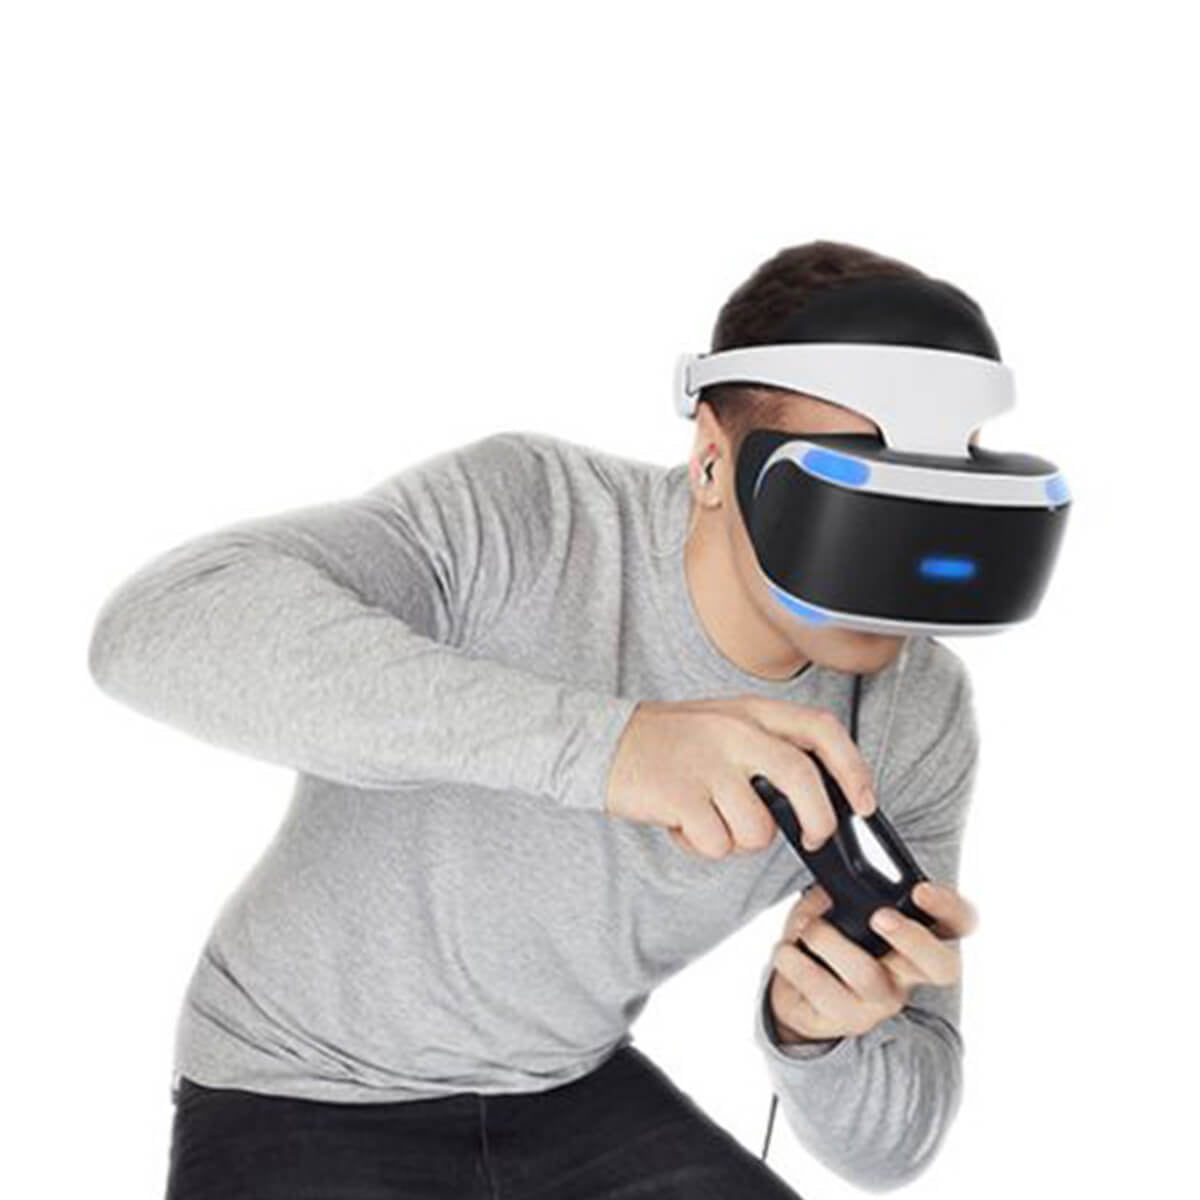 Noleggio | Playstation VR Mk5